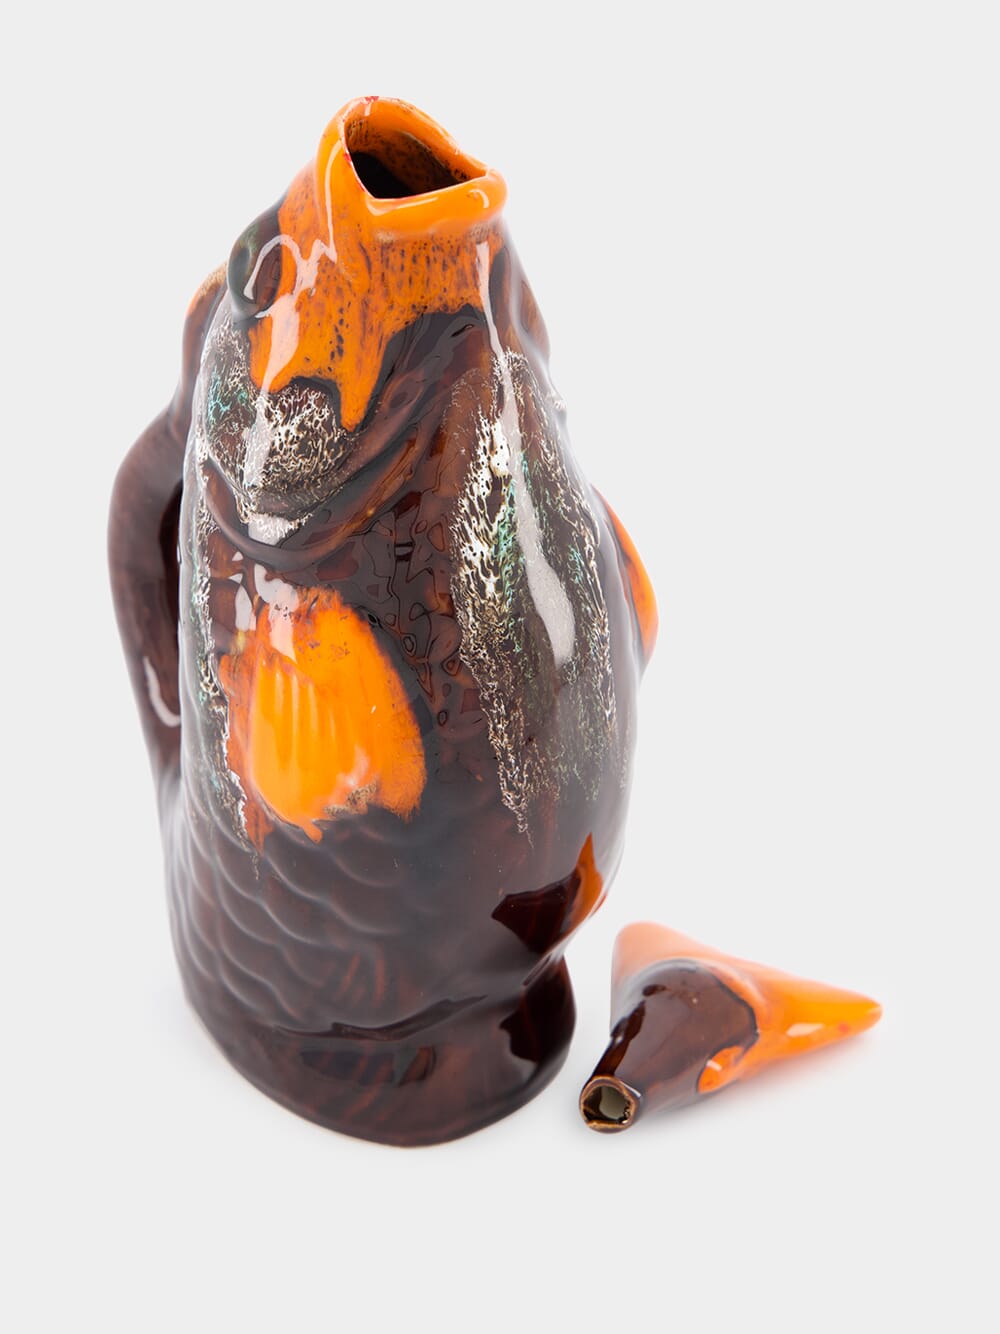 Artisan Fish Vase